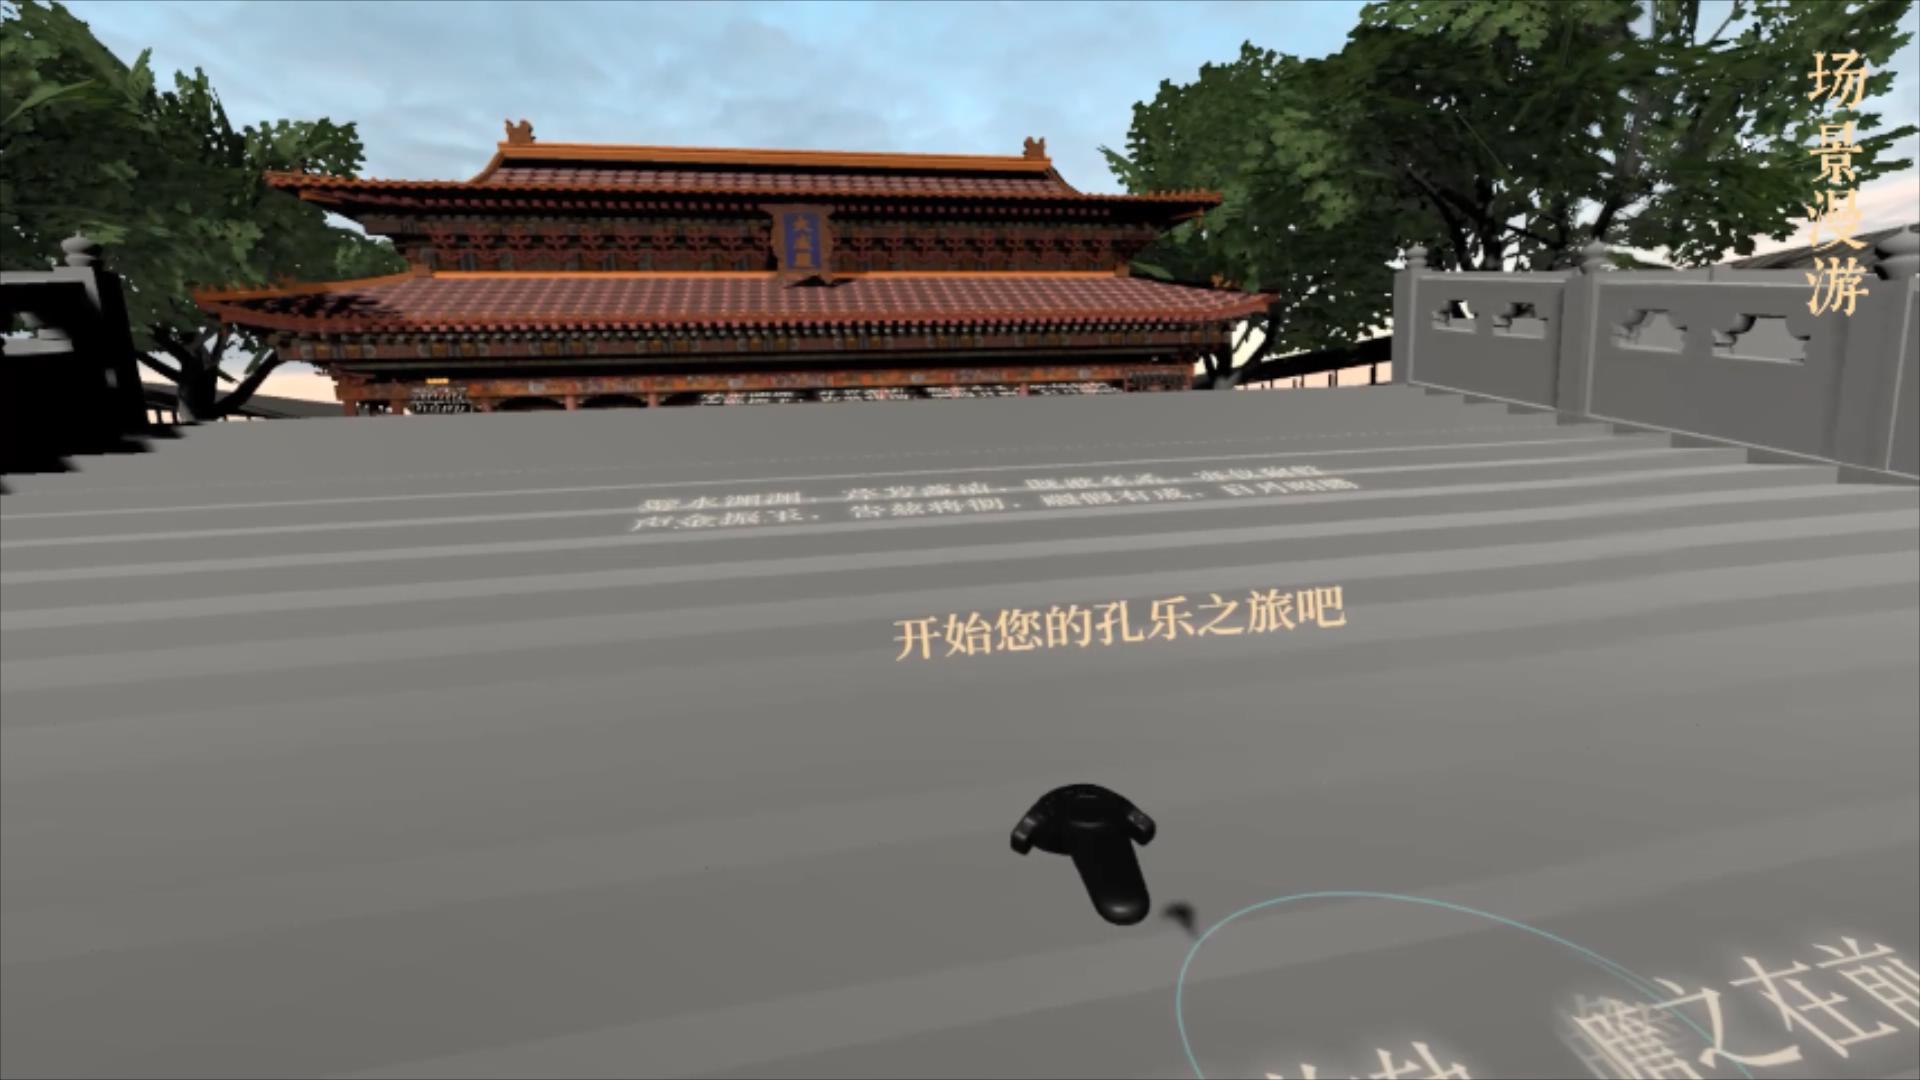 虚拟现实与游戏竞赛作品——大成礼乐--孔乐虚拟现实演奏体验系统